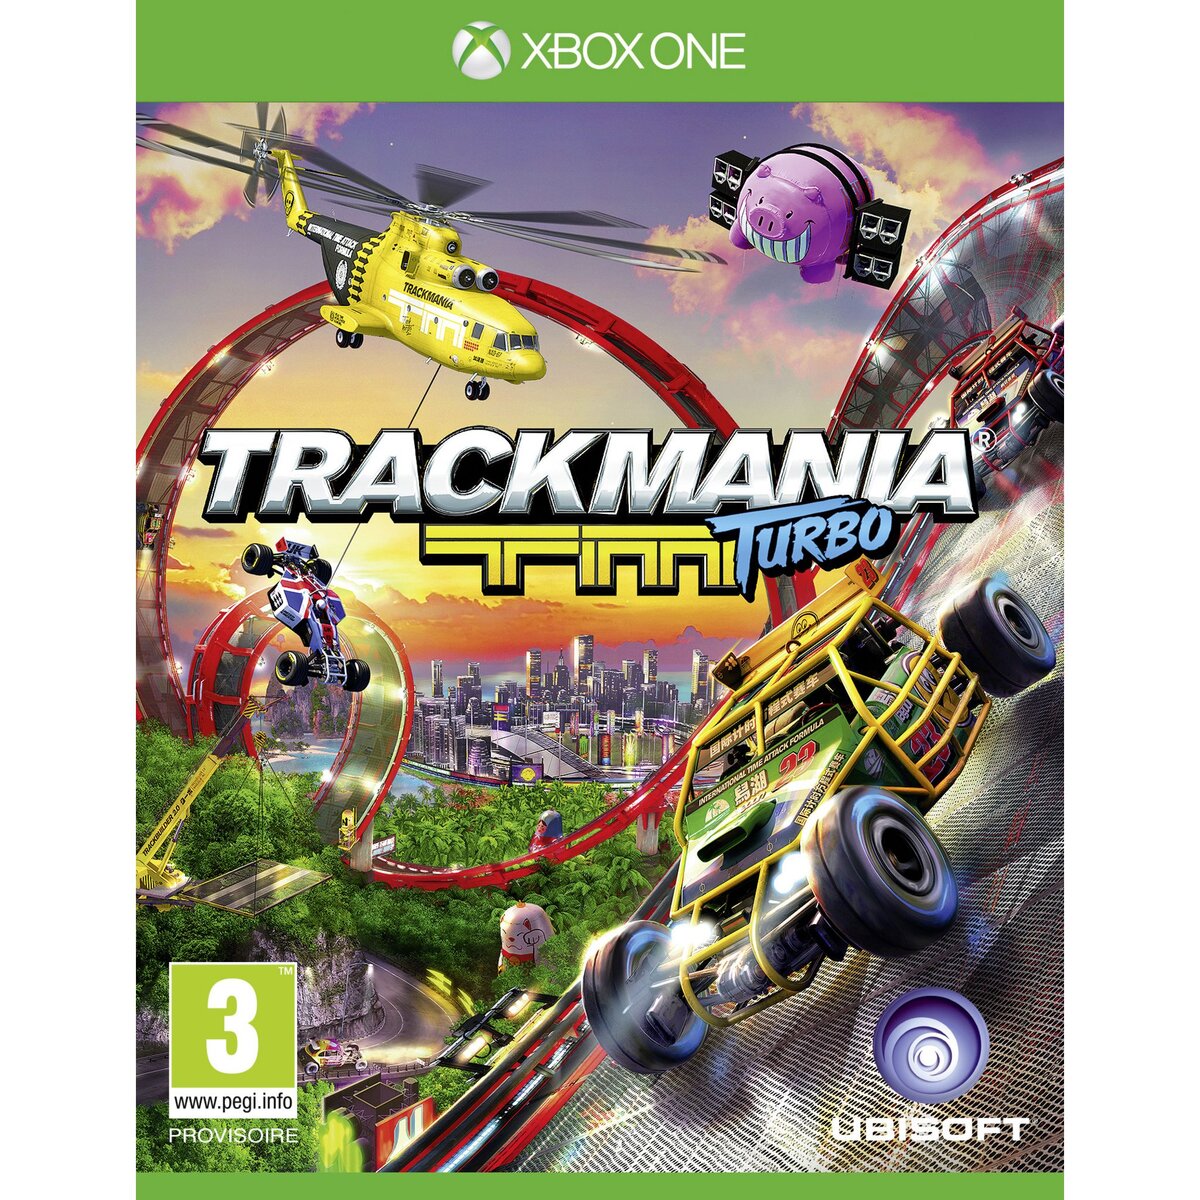 Trackmania Turbo Xbox One